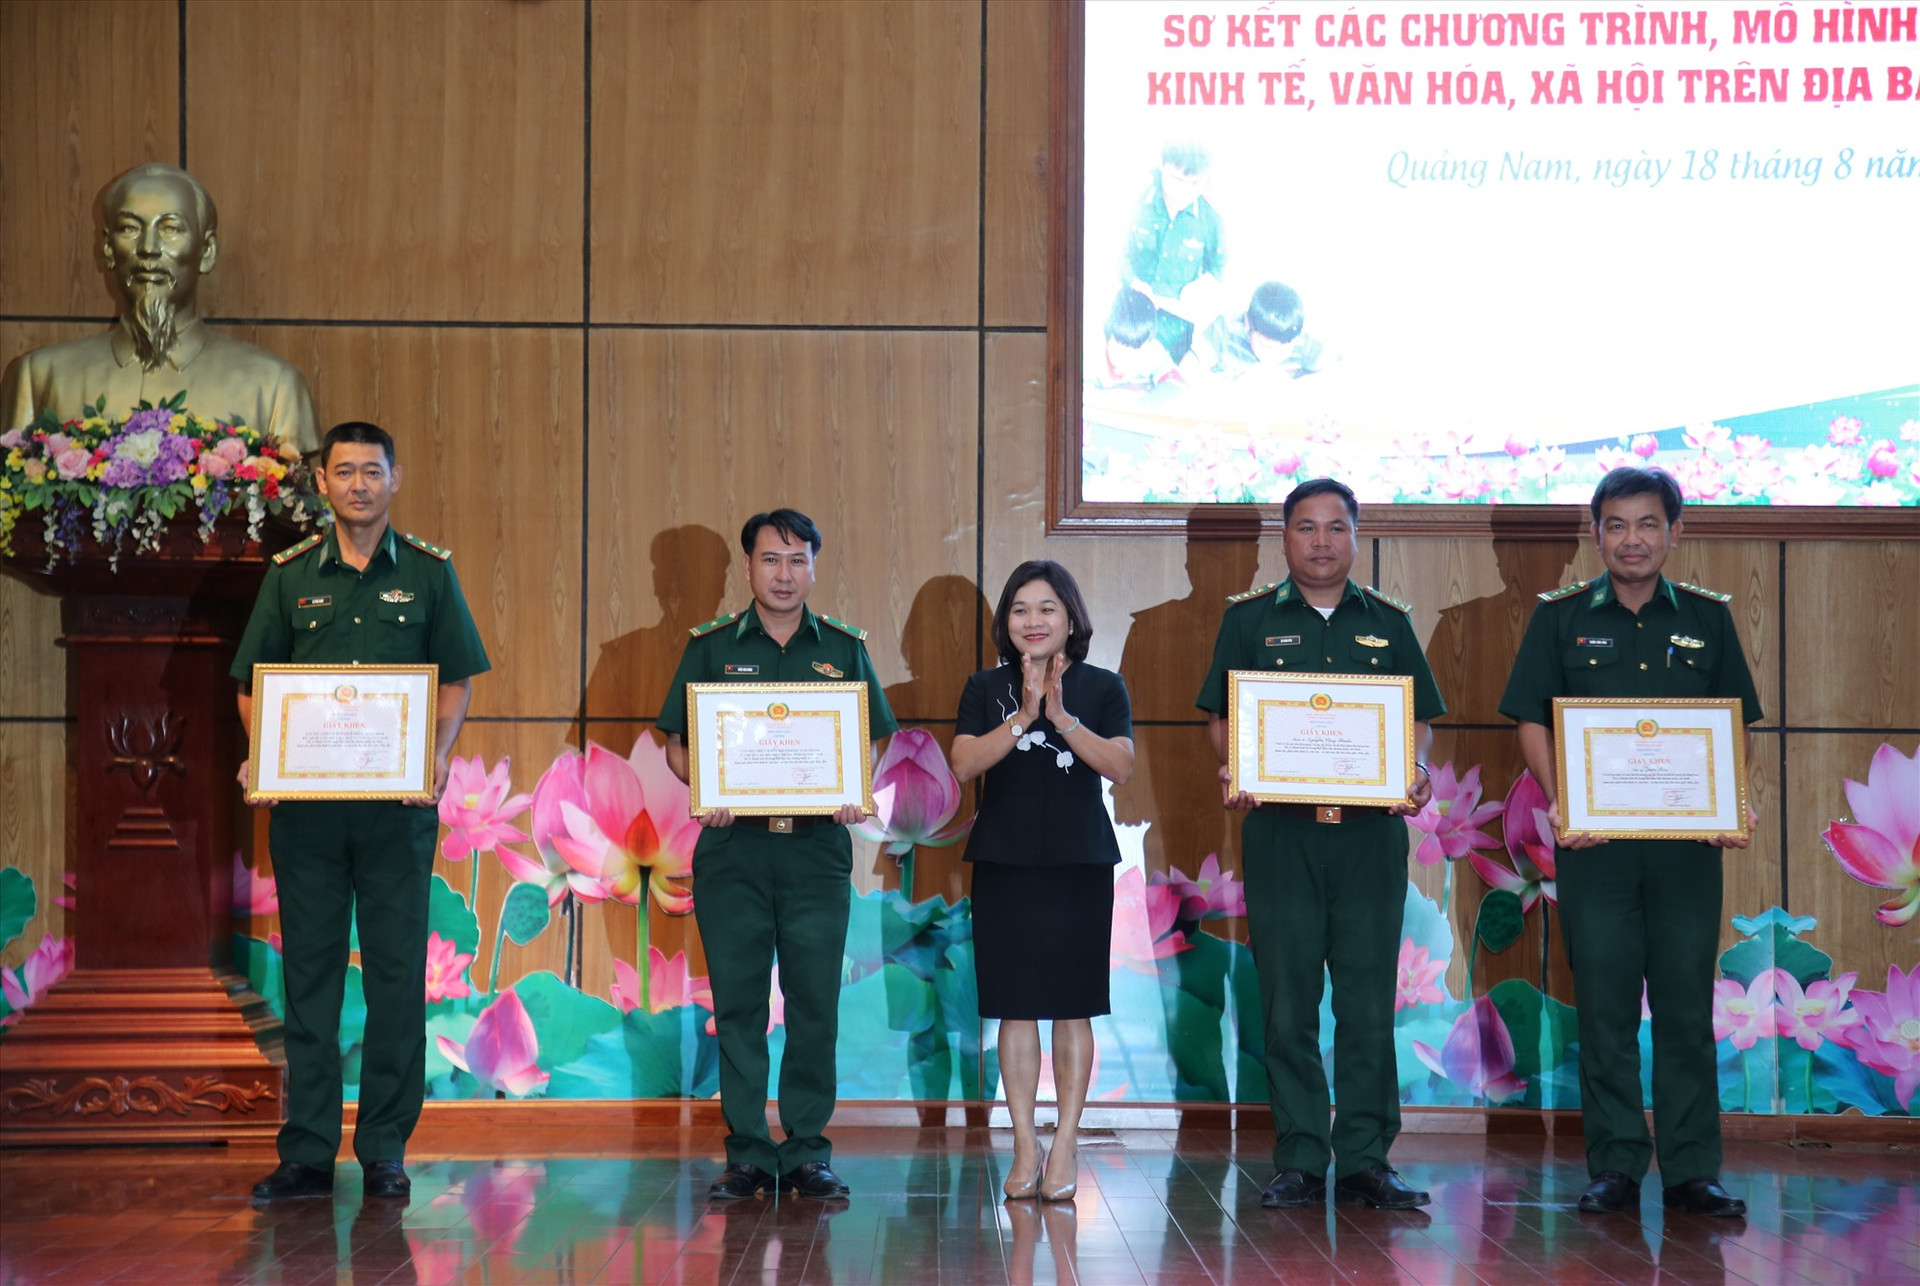 Trưởng ban Dân vận Tỉnh ủy Huỳnh Thị Thùy Dung trao giấy khen cho các cá nhân, tập thể. Ảnh: A.N